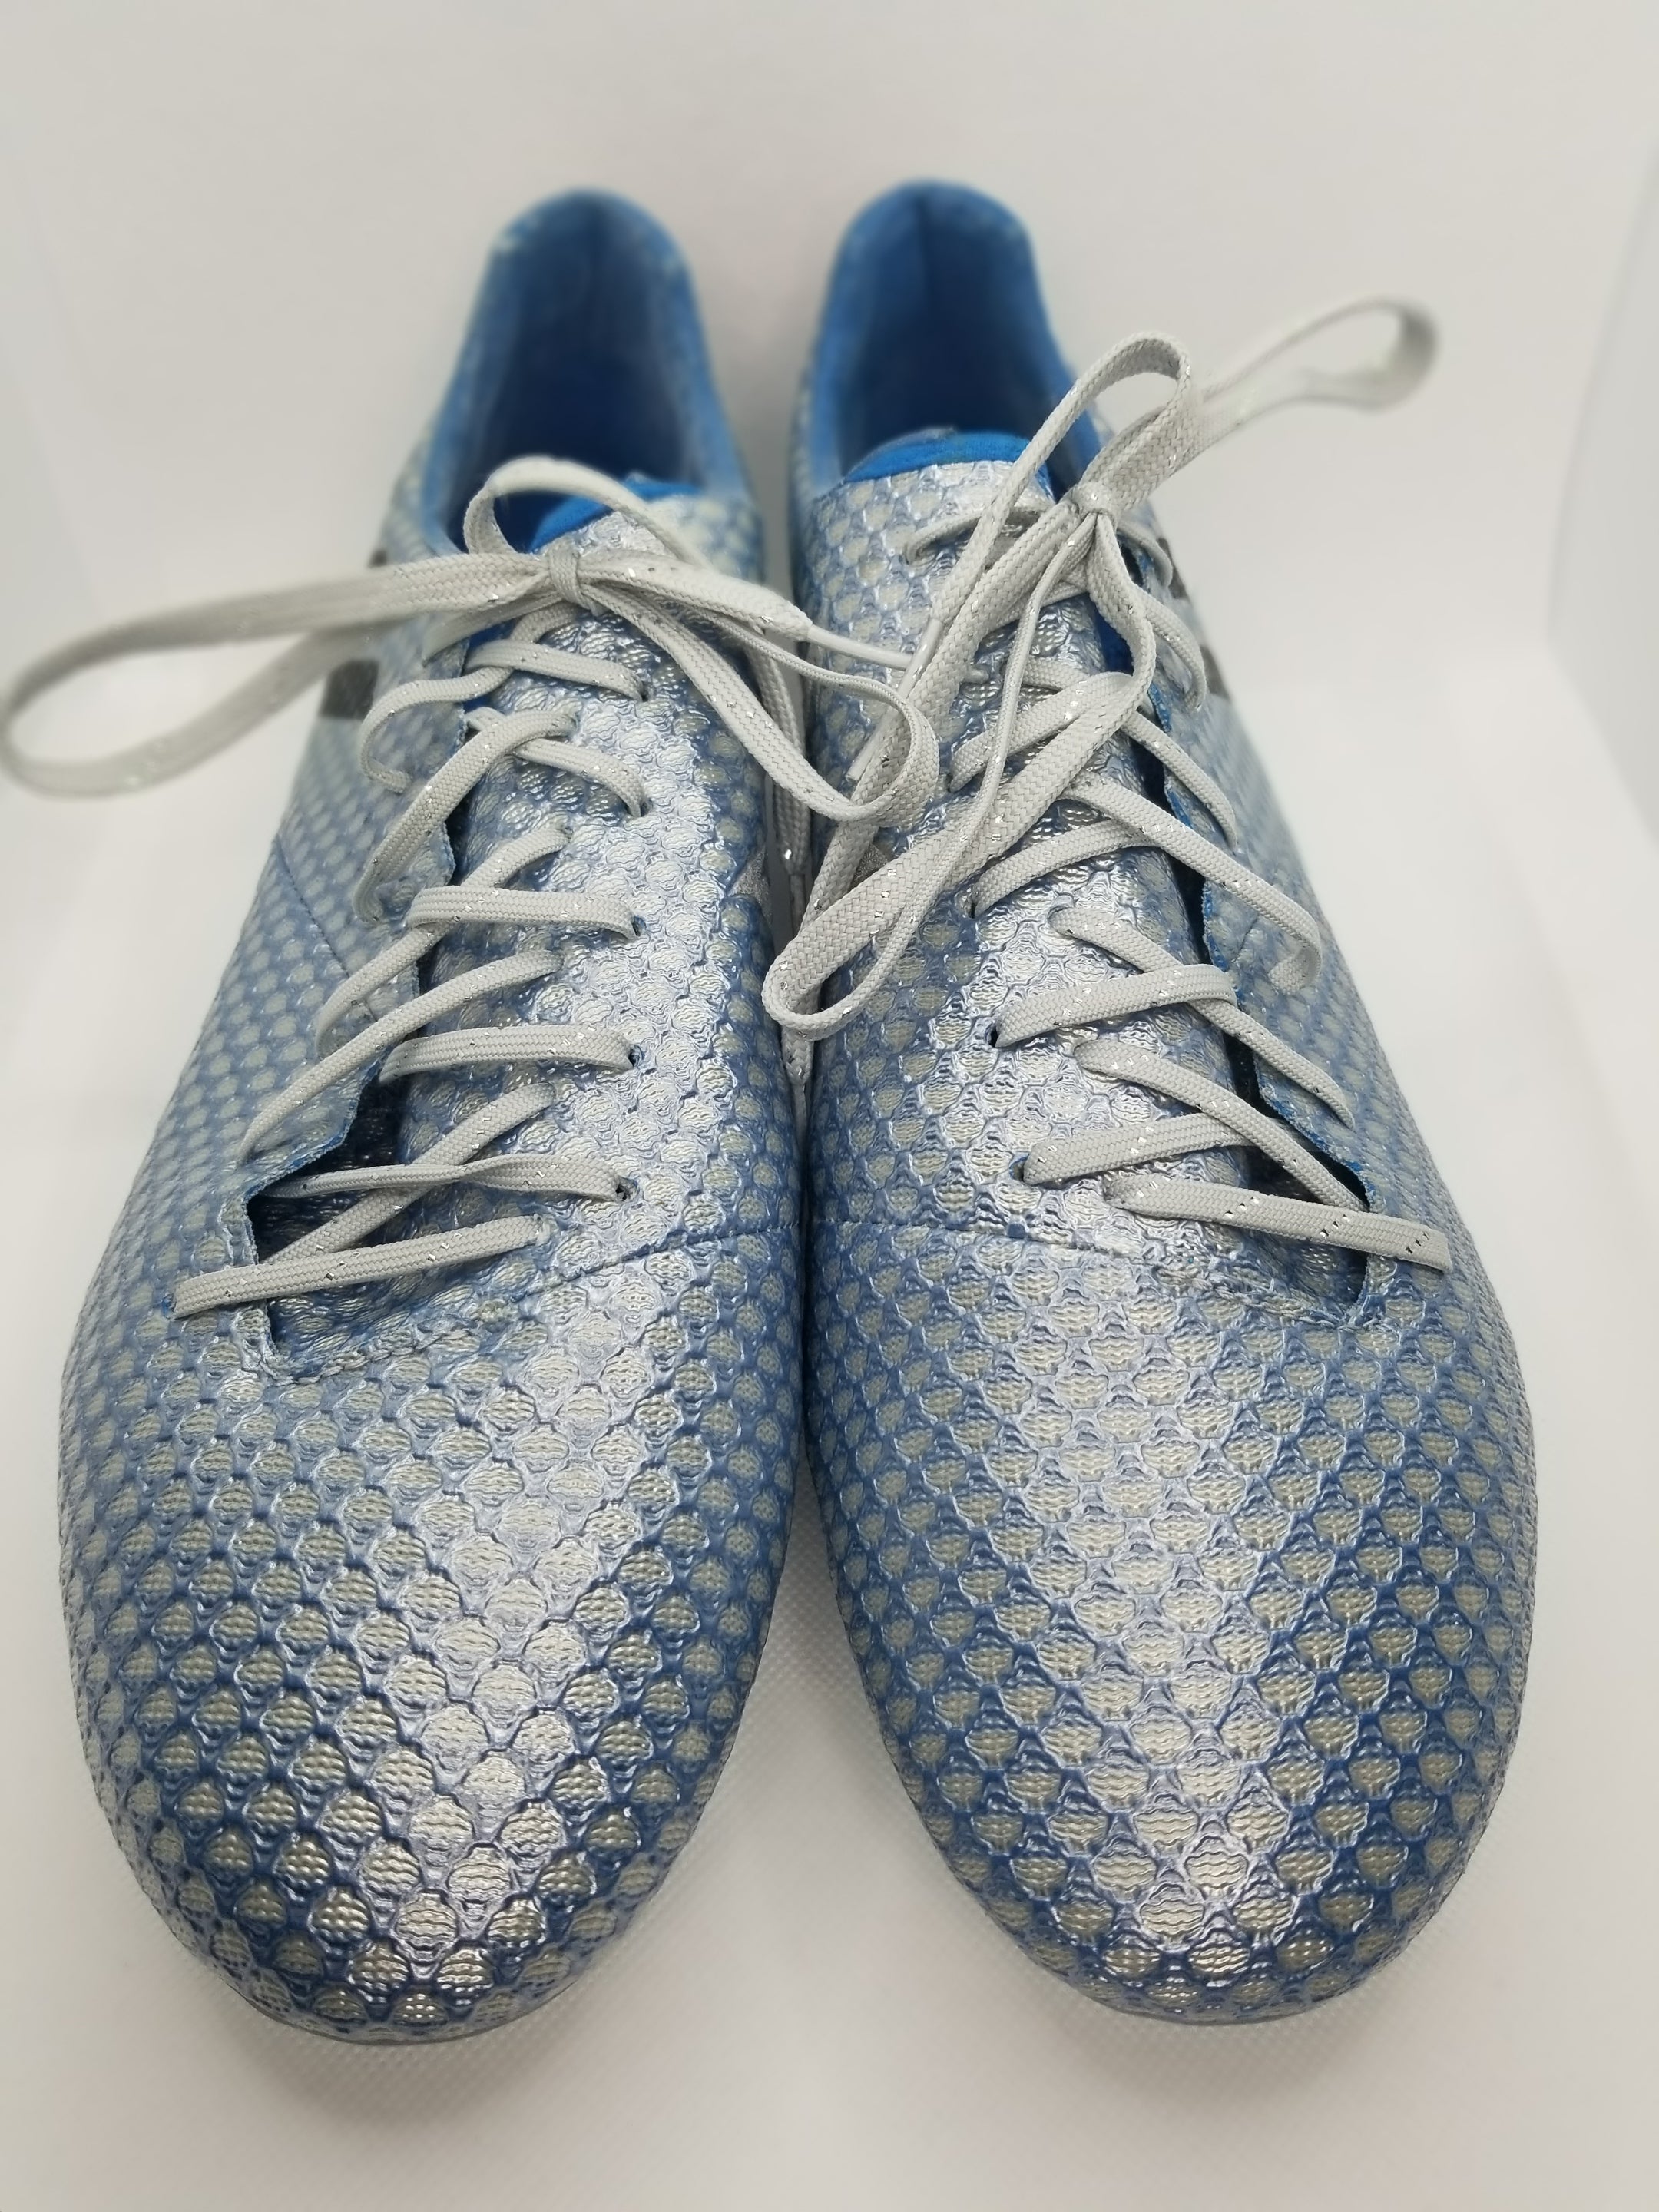 Adidas Messi 16.1 FG – Nyong Boots